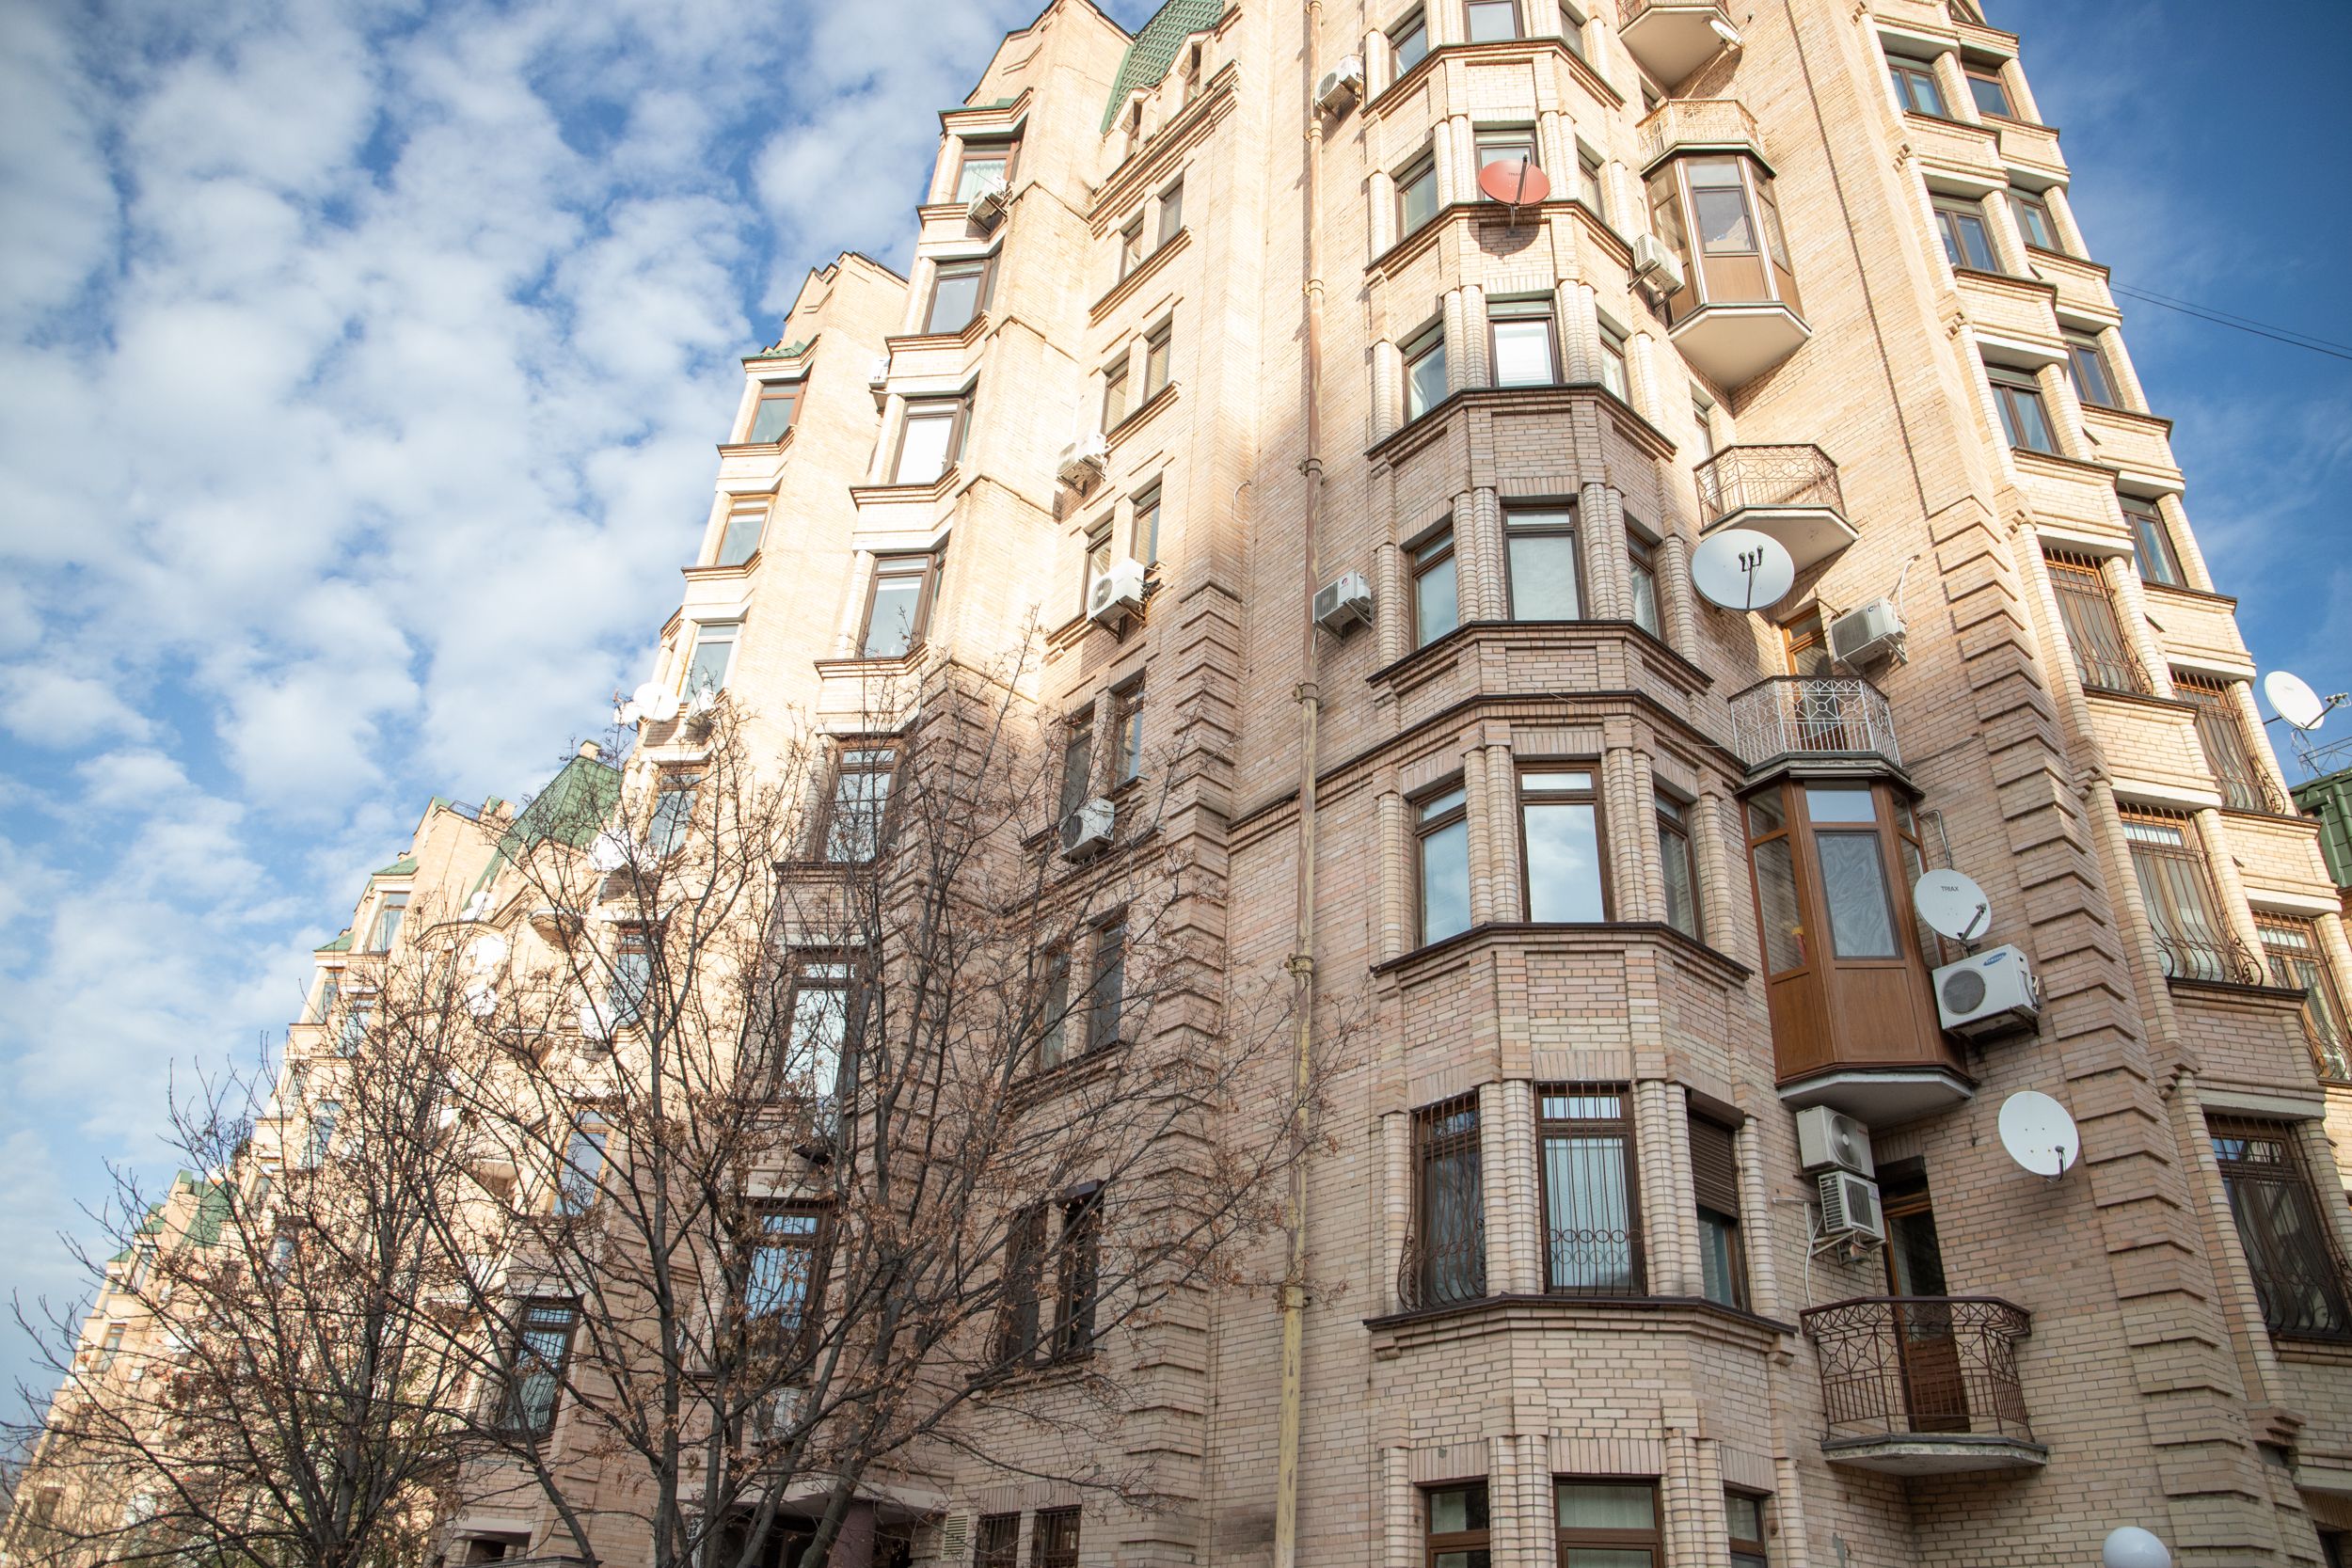 Цены на аренду квартир в Киеве - какая стоимость жилья и когда прогнозируют рост - Недвижимость